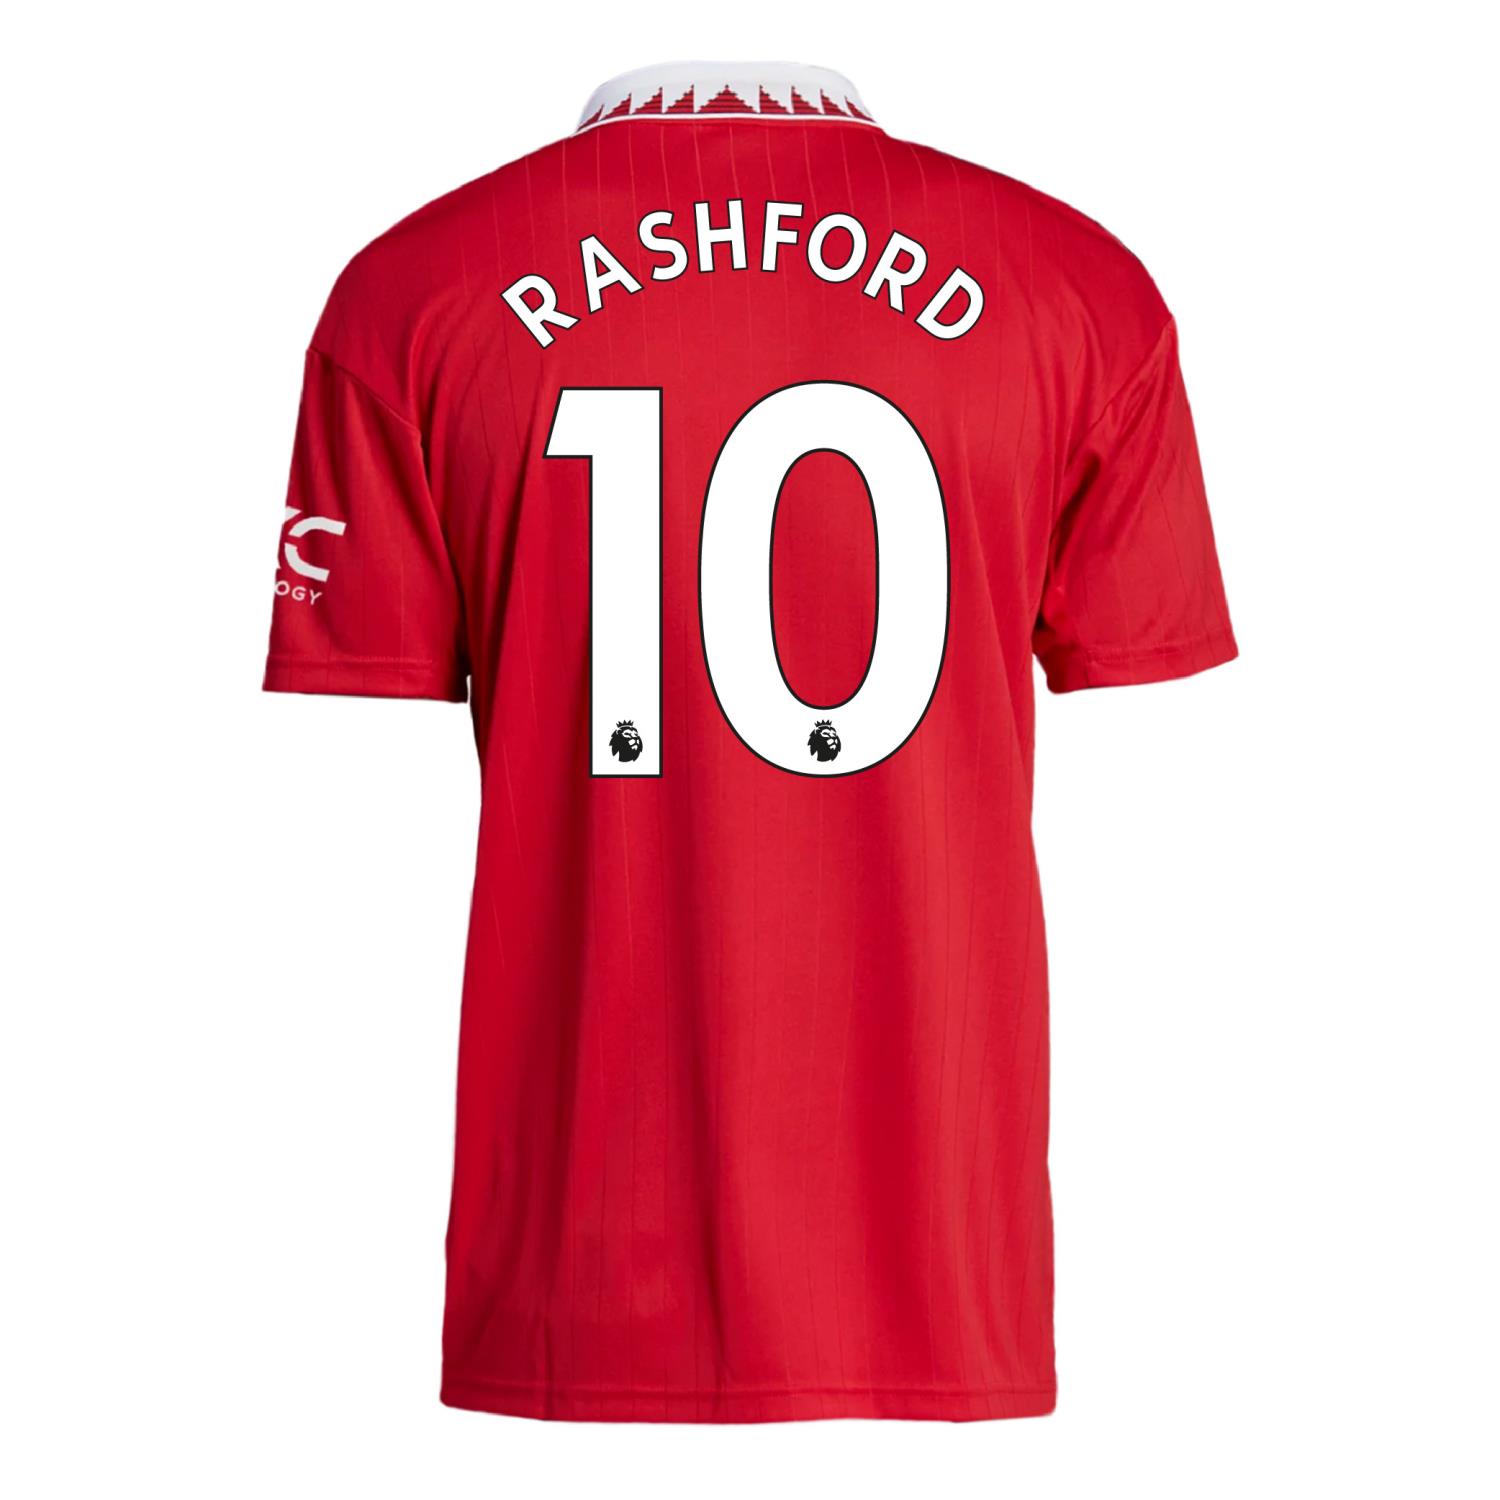 Rashford nr 10 Premier League trykk (navn og nummer)